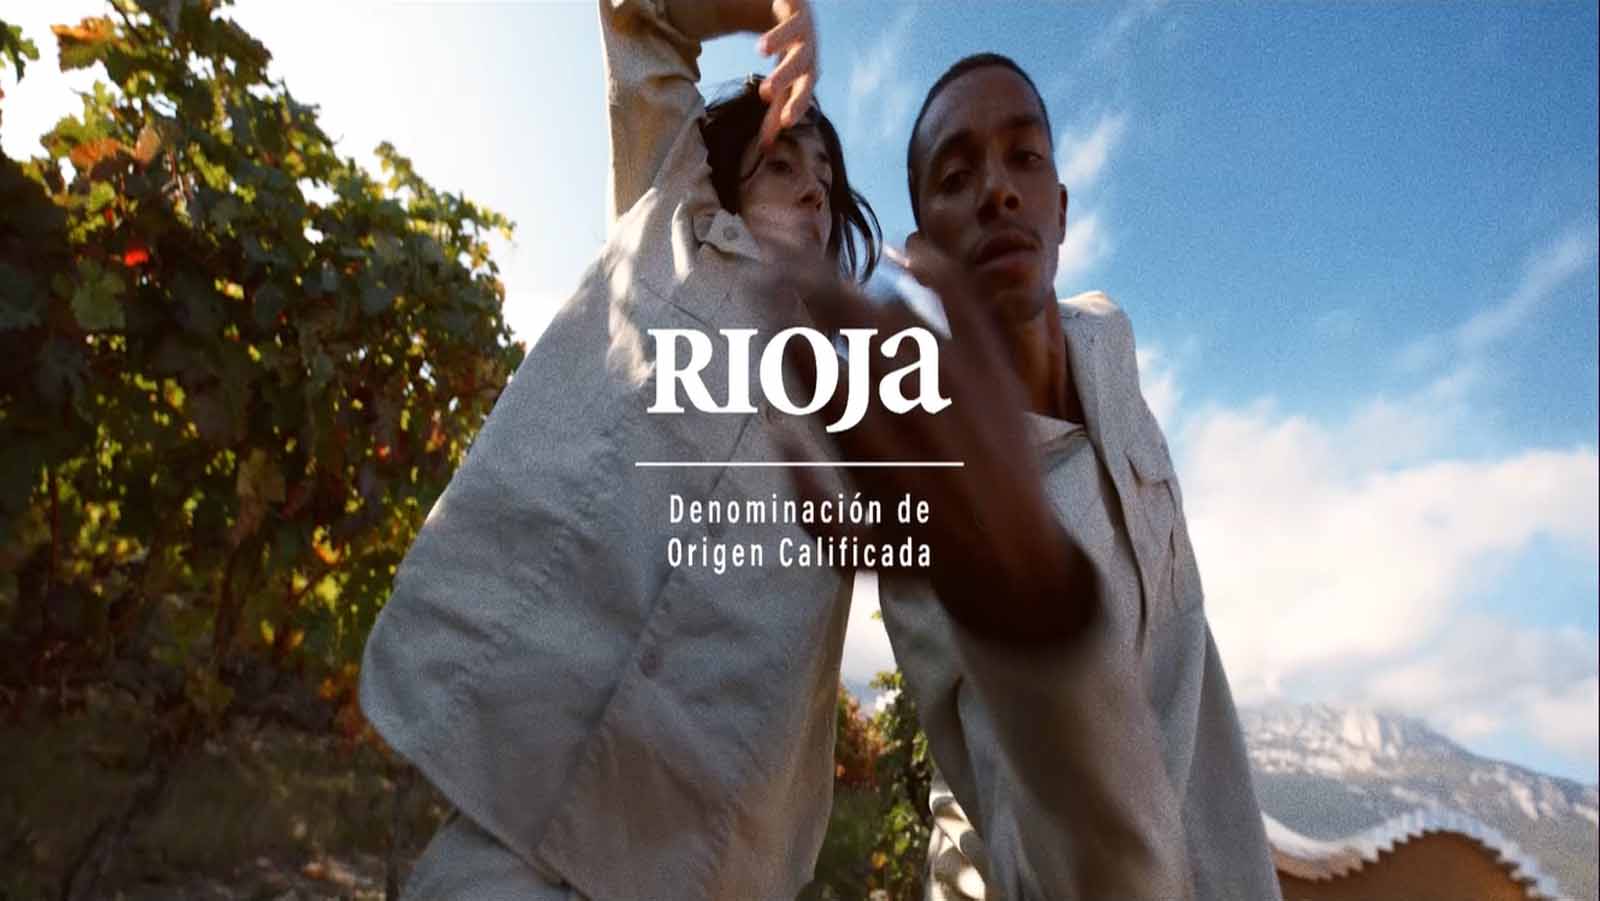 Nueva campaña de Rioja